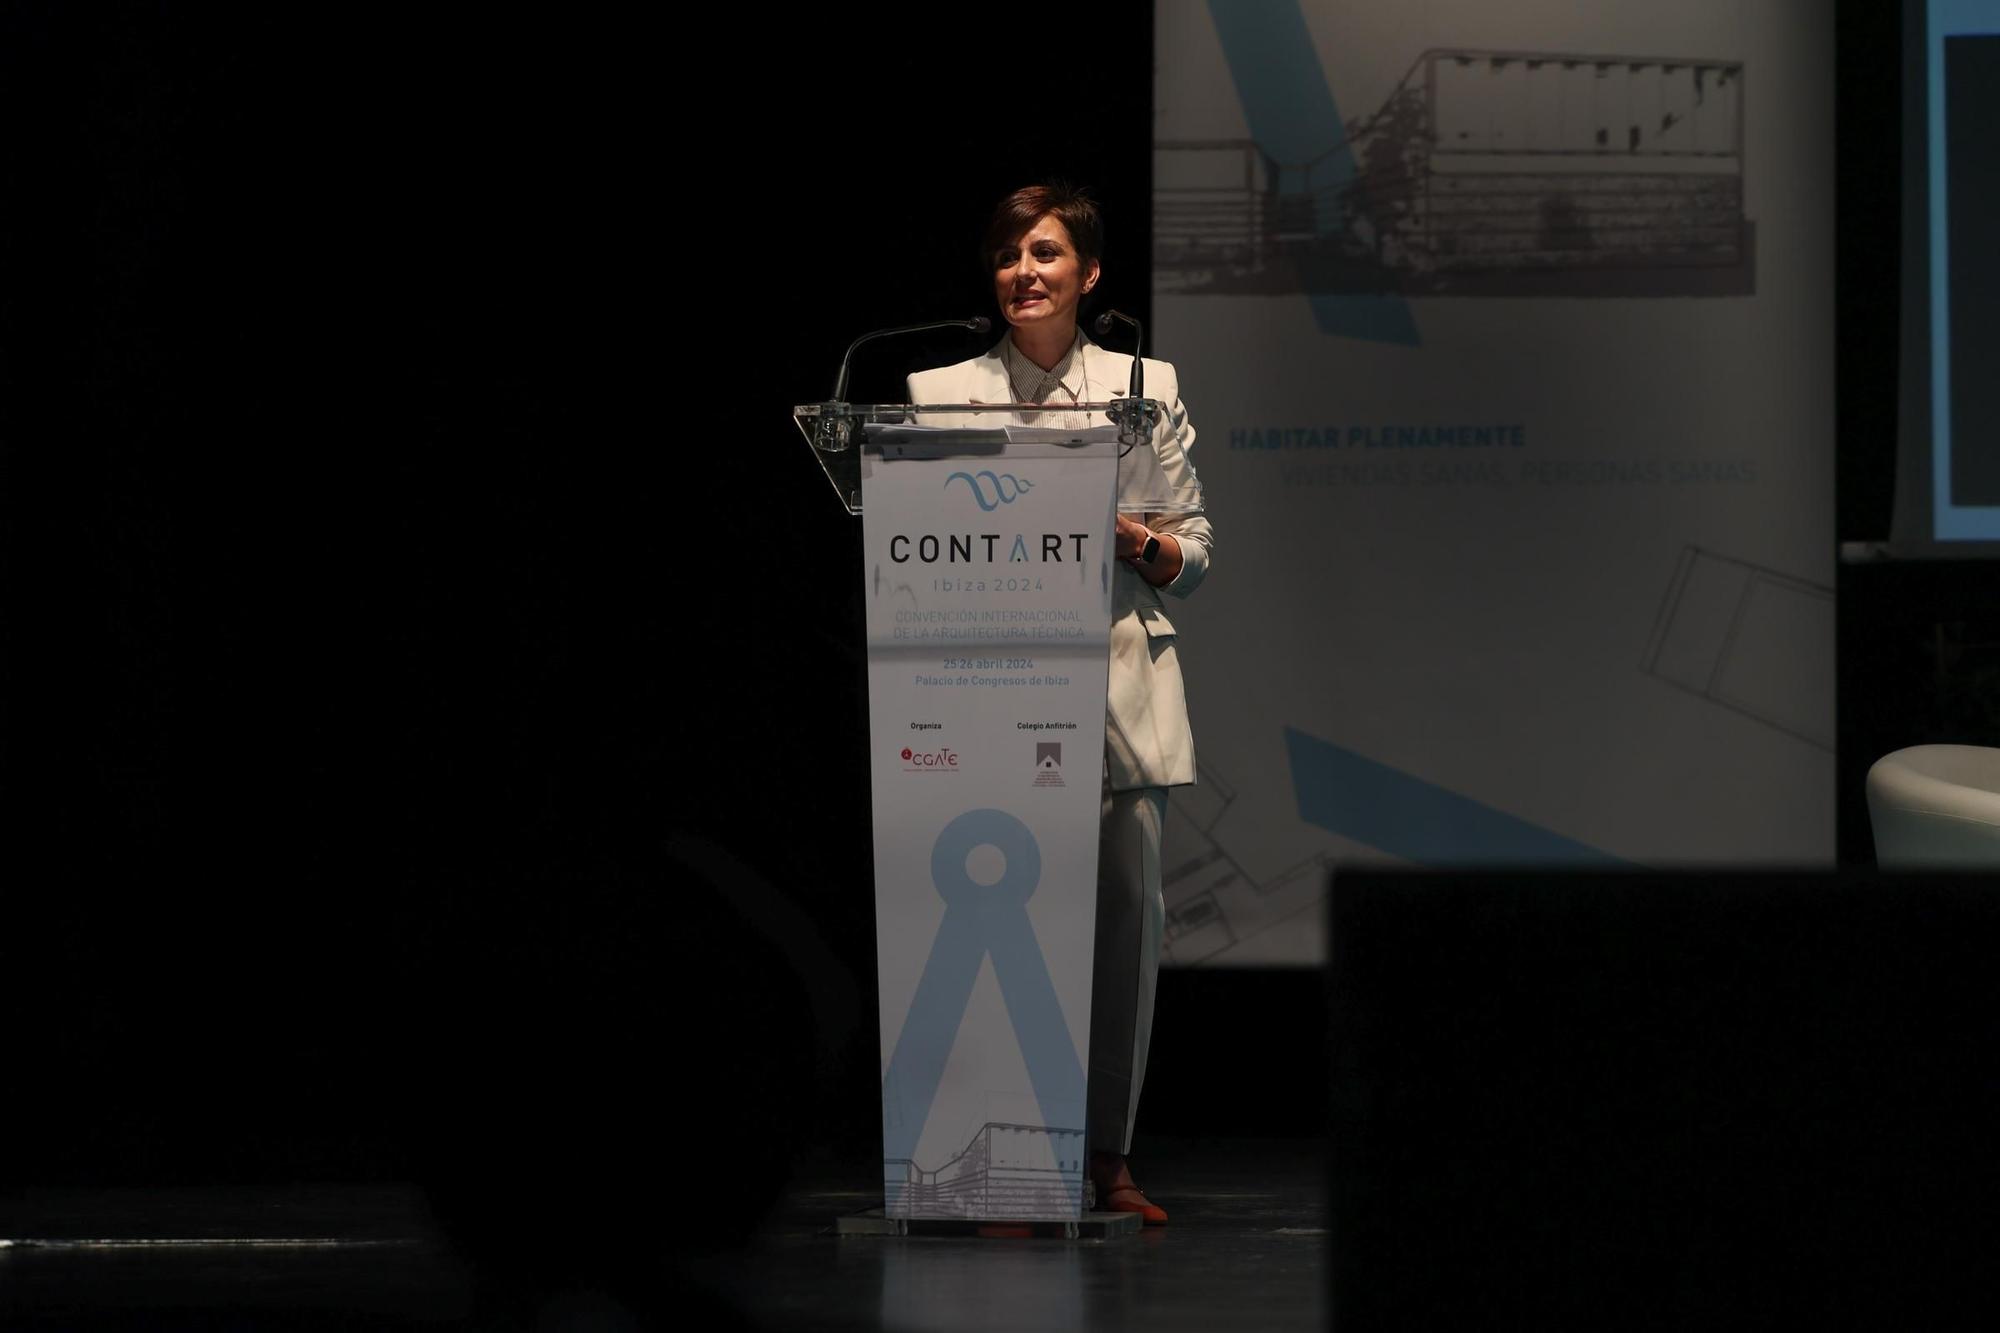 Galería: La ministra de Vivenda, Isabel Rodríguez García, en el congreso de Arquitectura Técnica de Ibiza